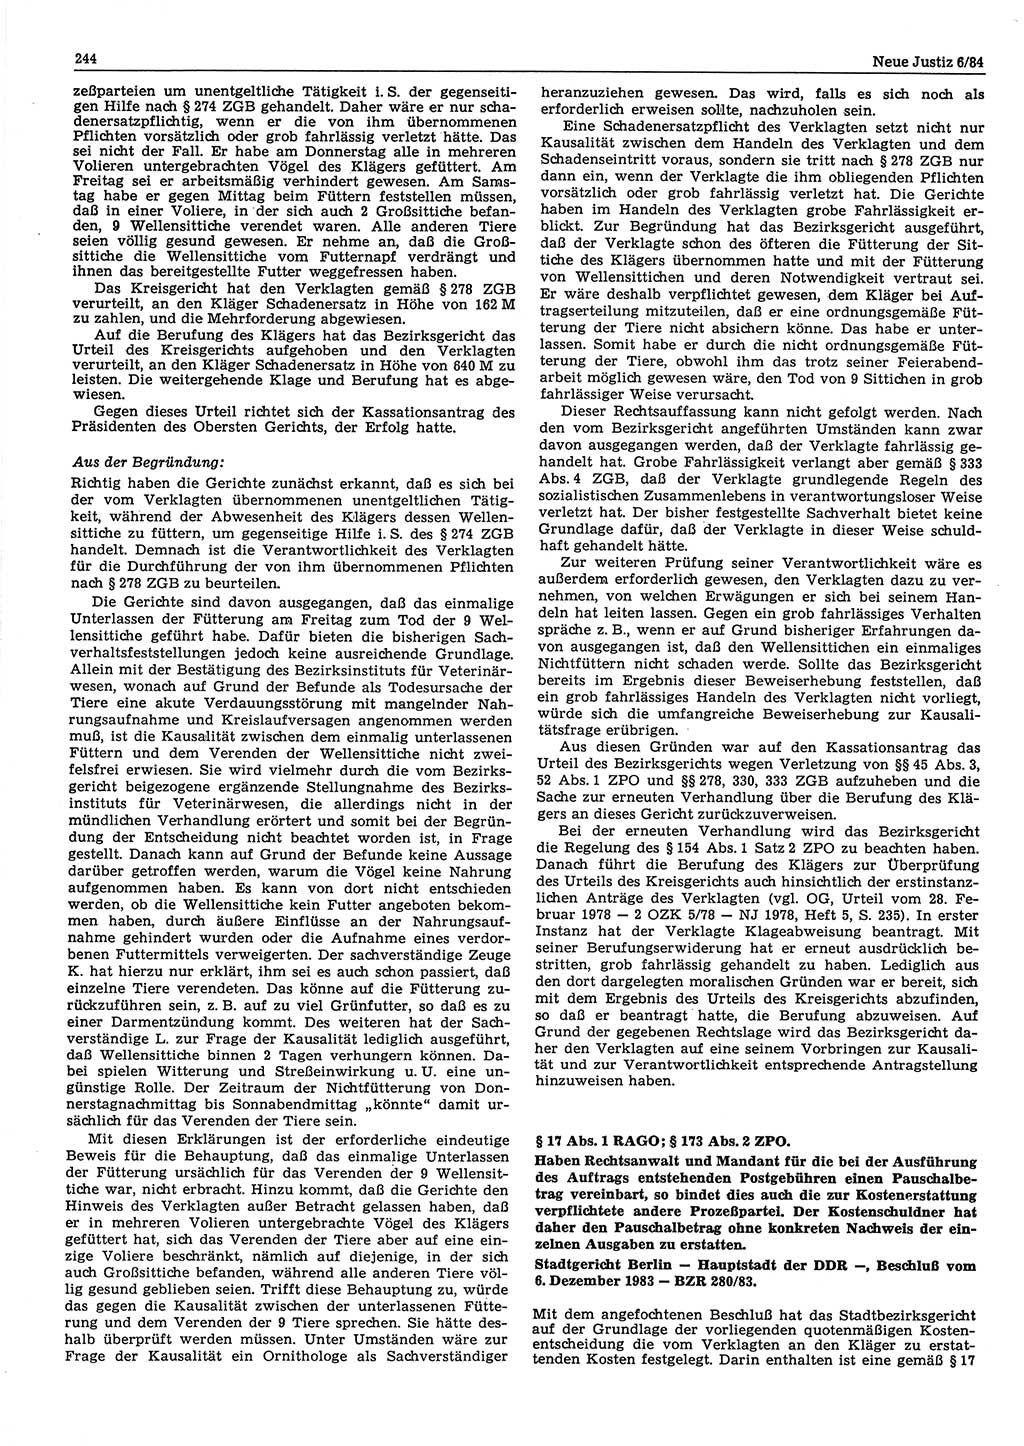 Neue Justiz (NJ), Zeitschrift für sozialistisches Recht und Gesetzlichkeit [Deutsche Demokratische Republik (DDR)], 38. Jahrgang 1984, Seite 244 (NJ DDR 1984, S. 244)